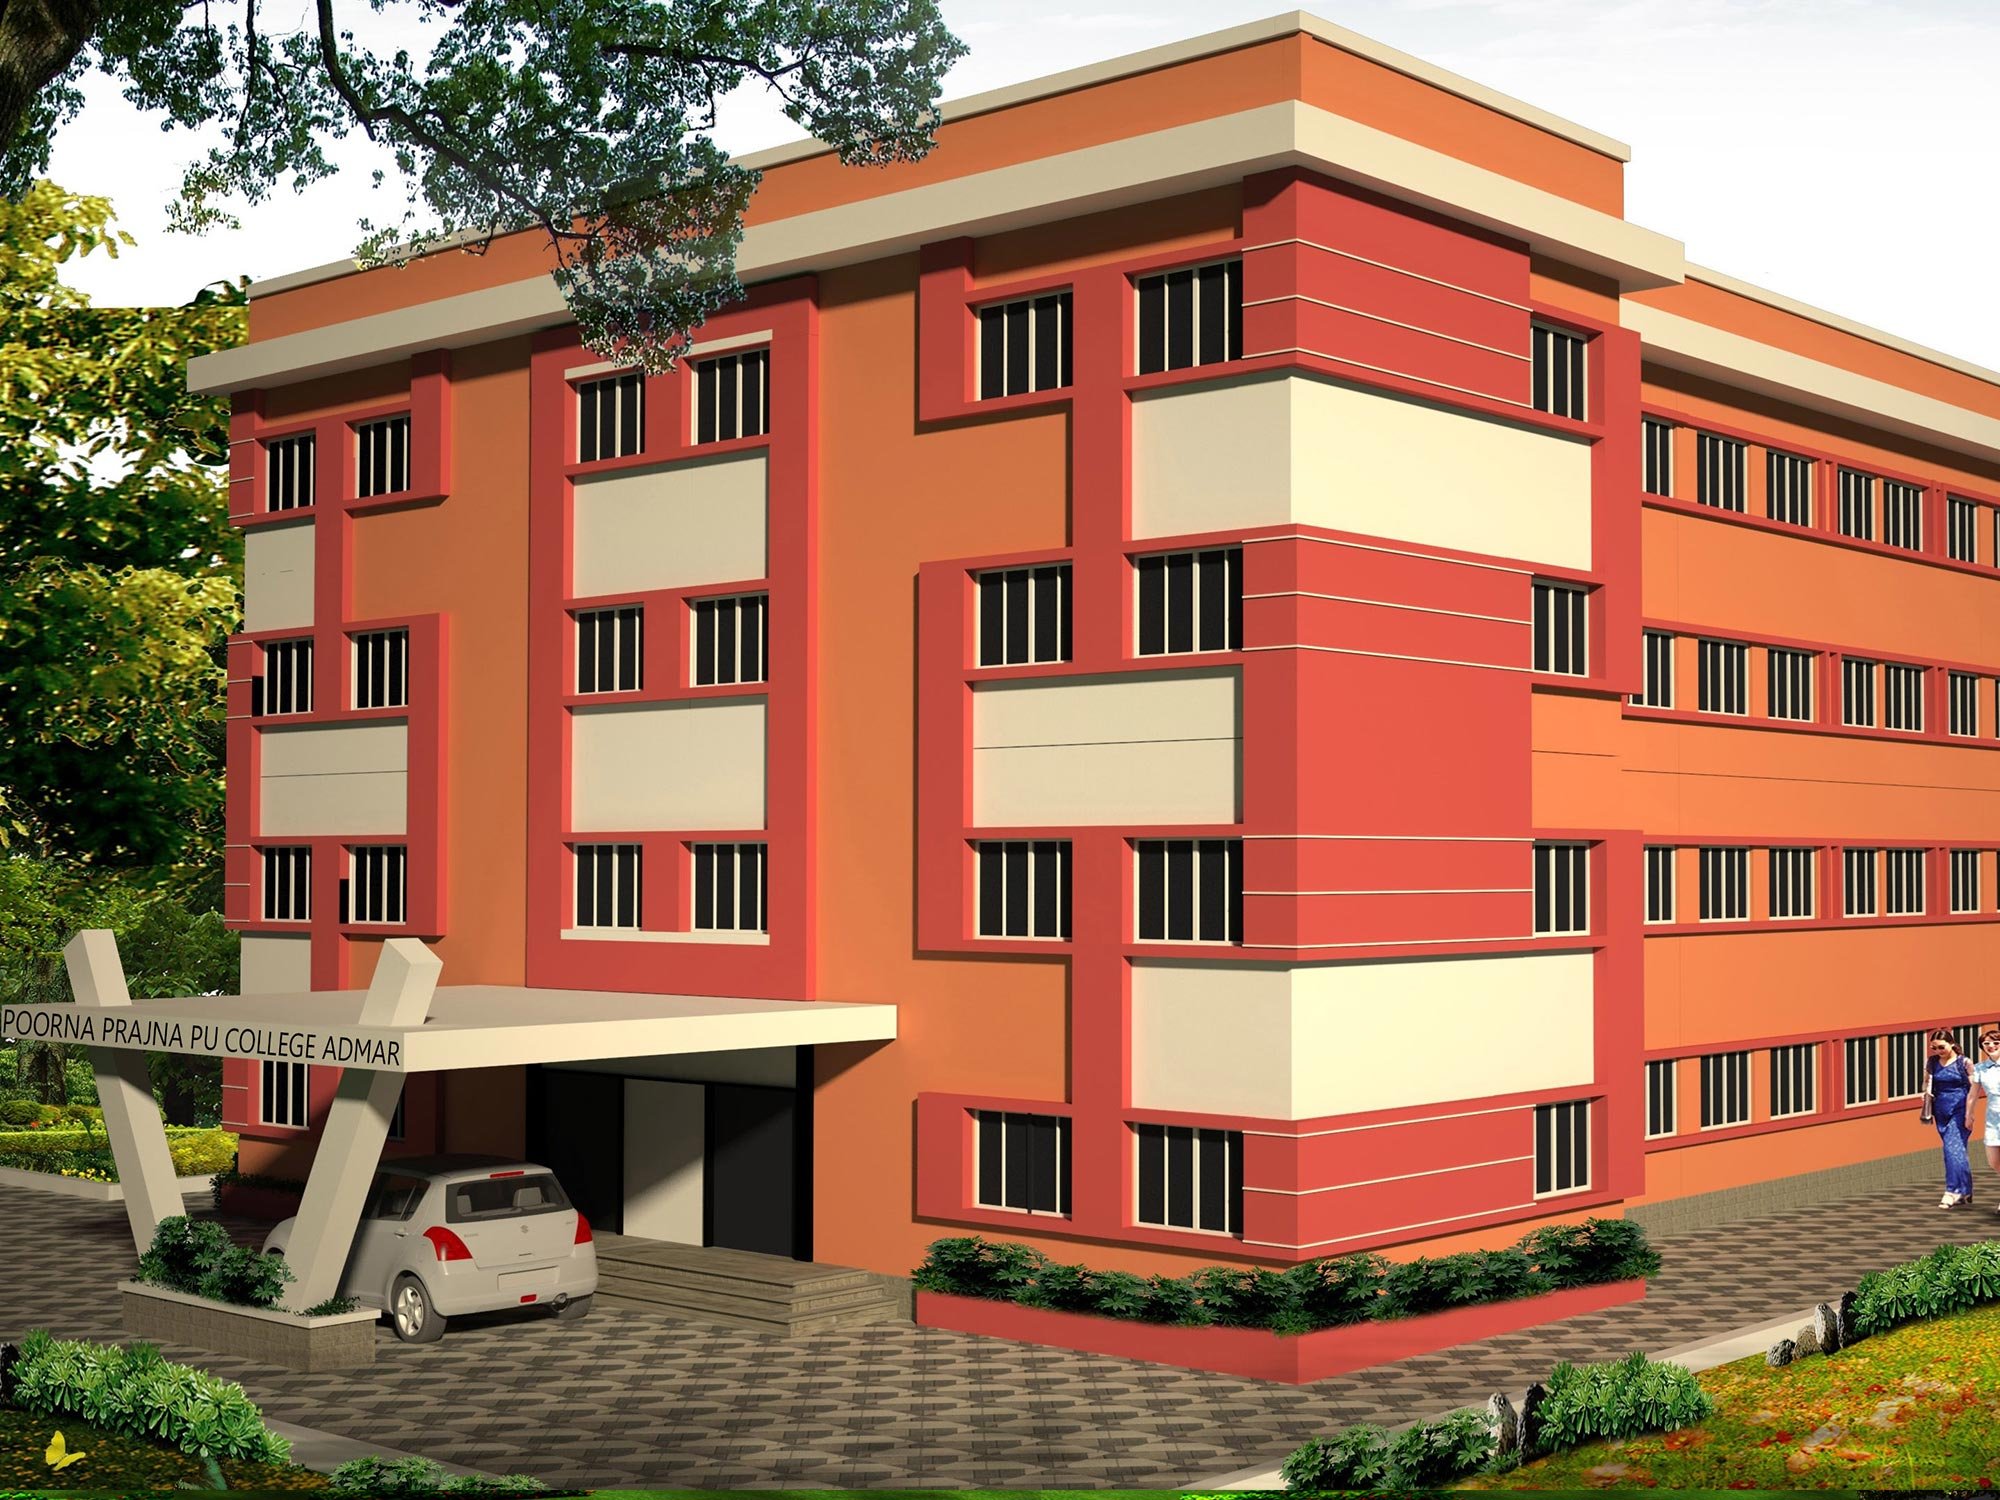 Poorna Prajna PU College